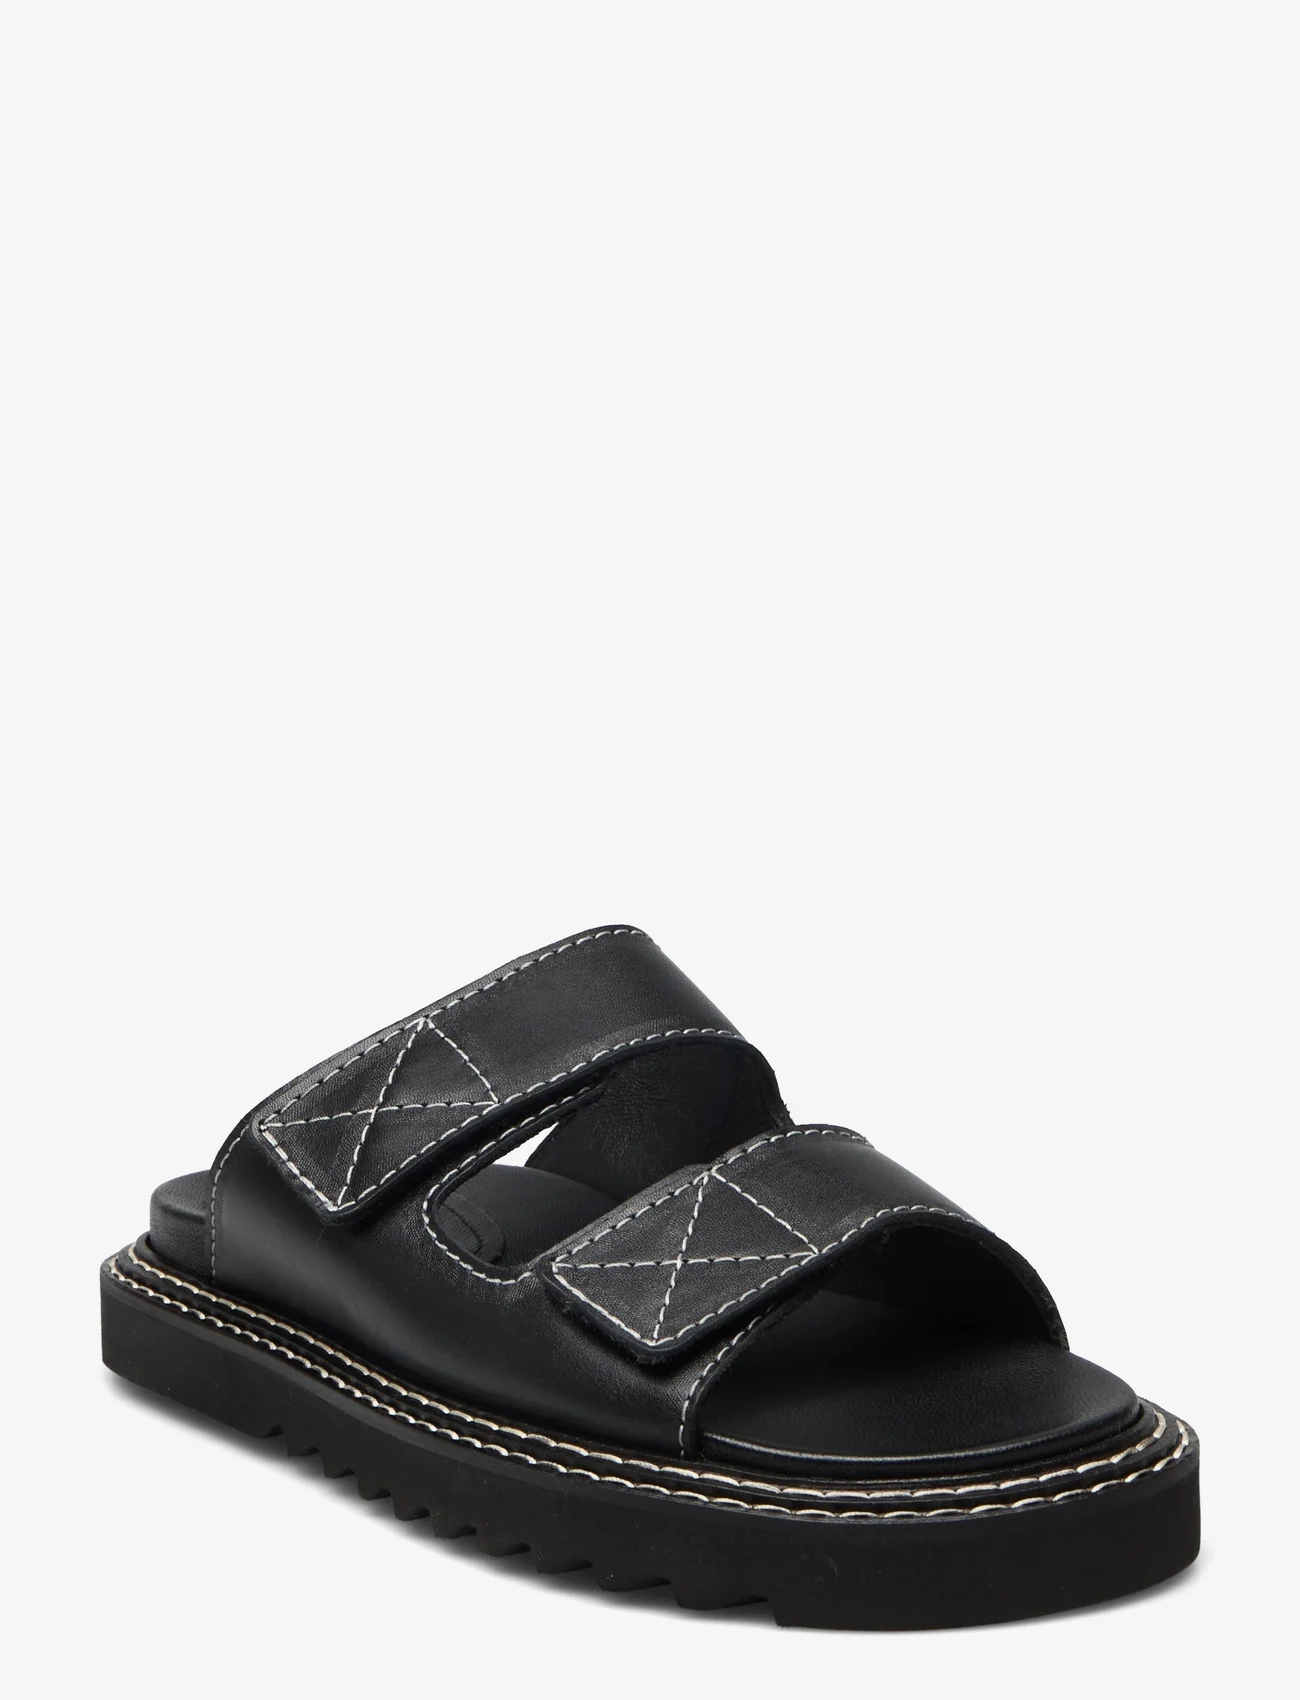 Billi Bi - A1560 - flat sandals - black nappa - 0